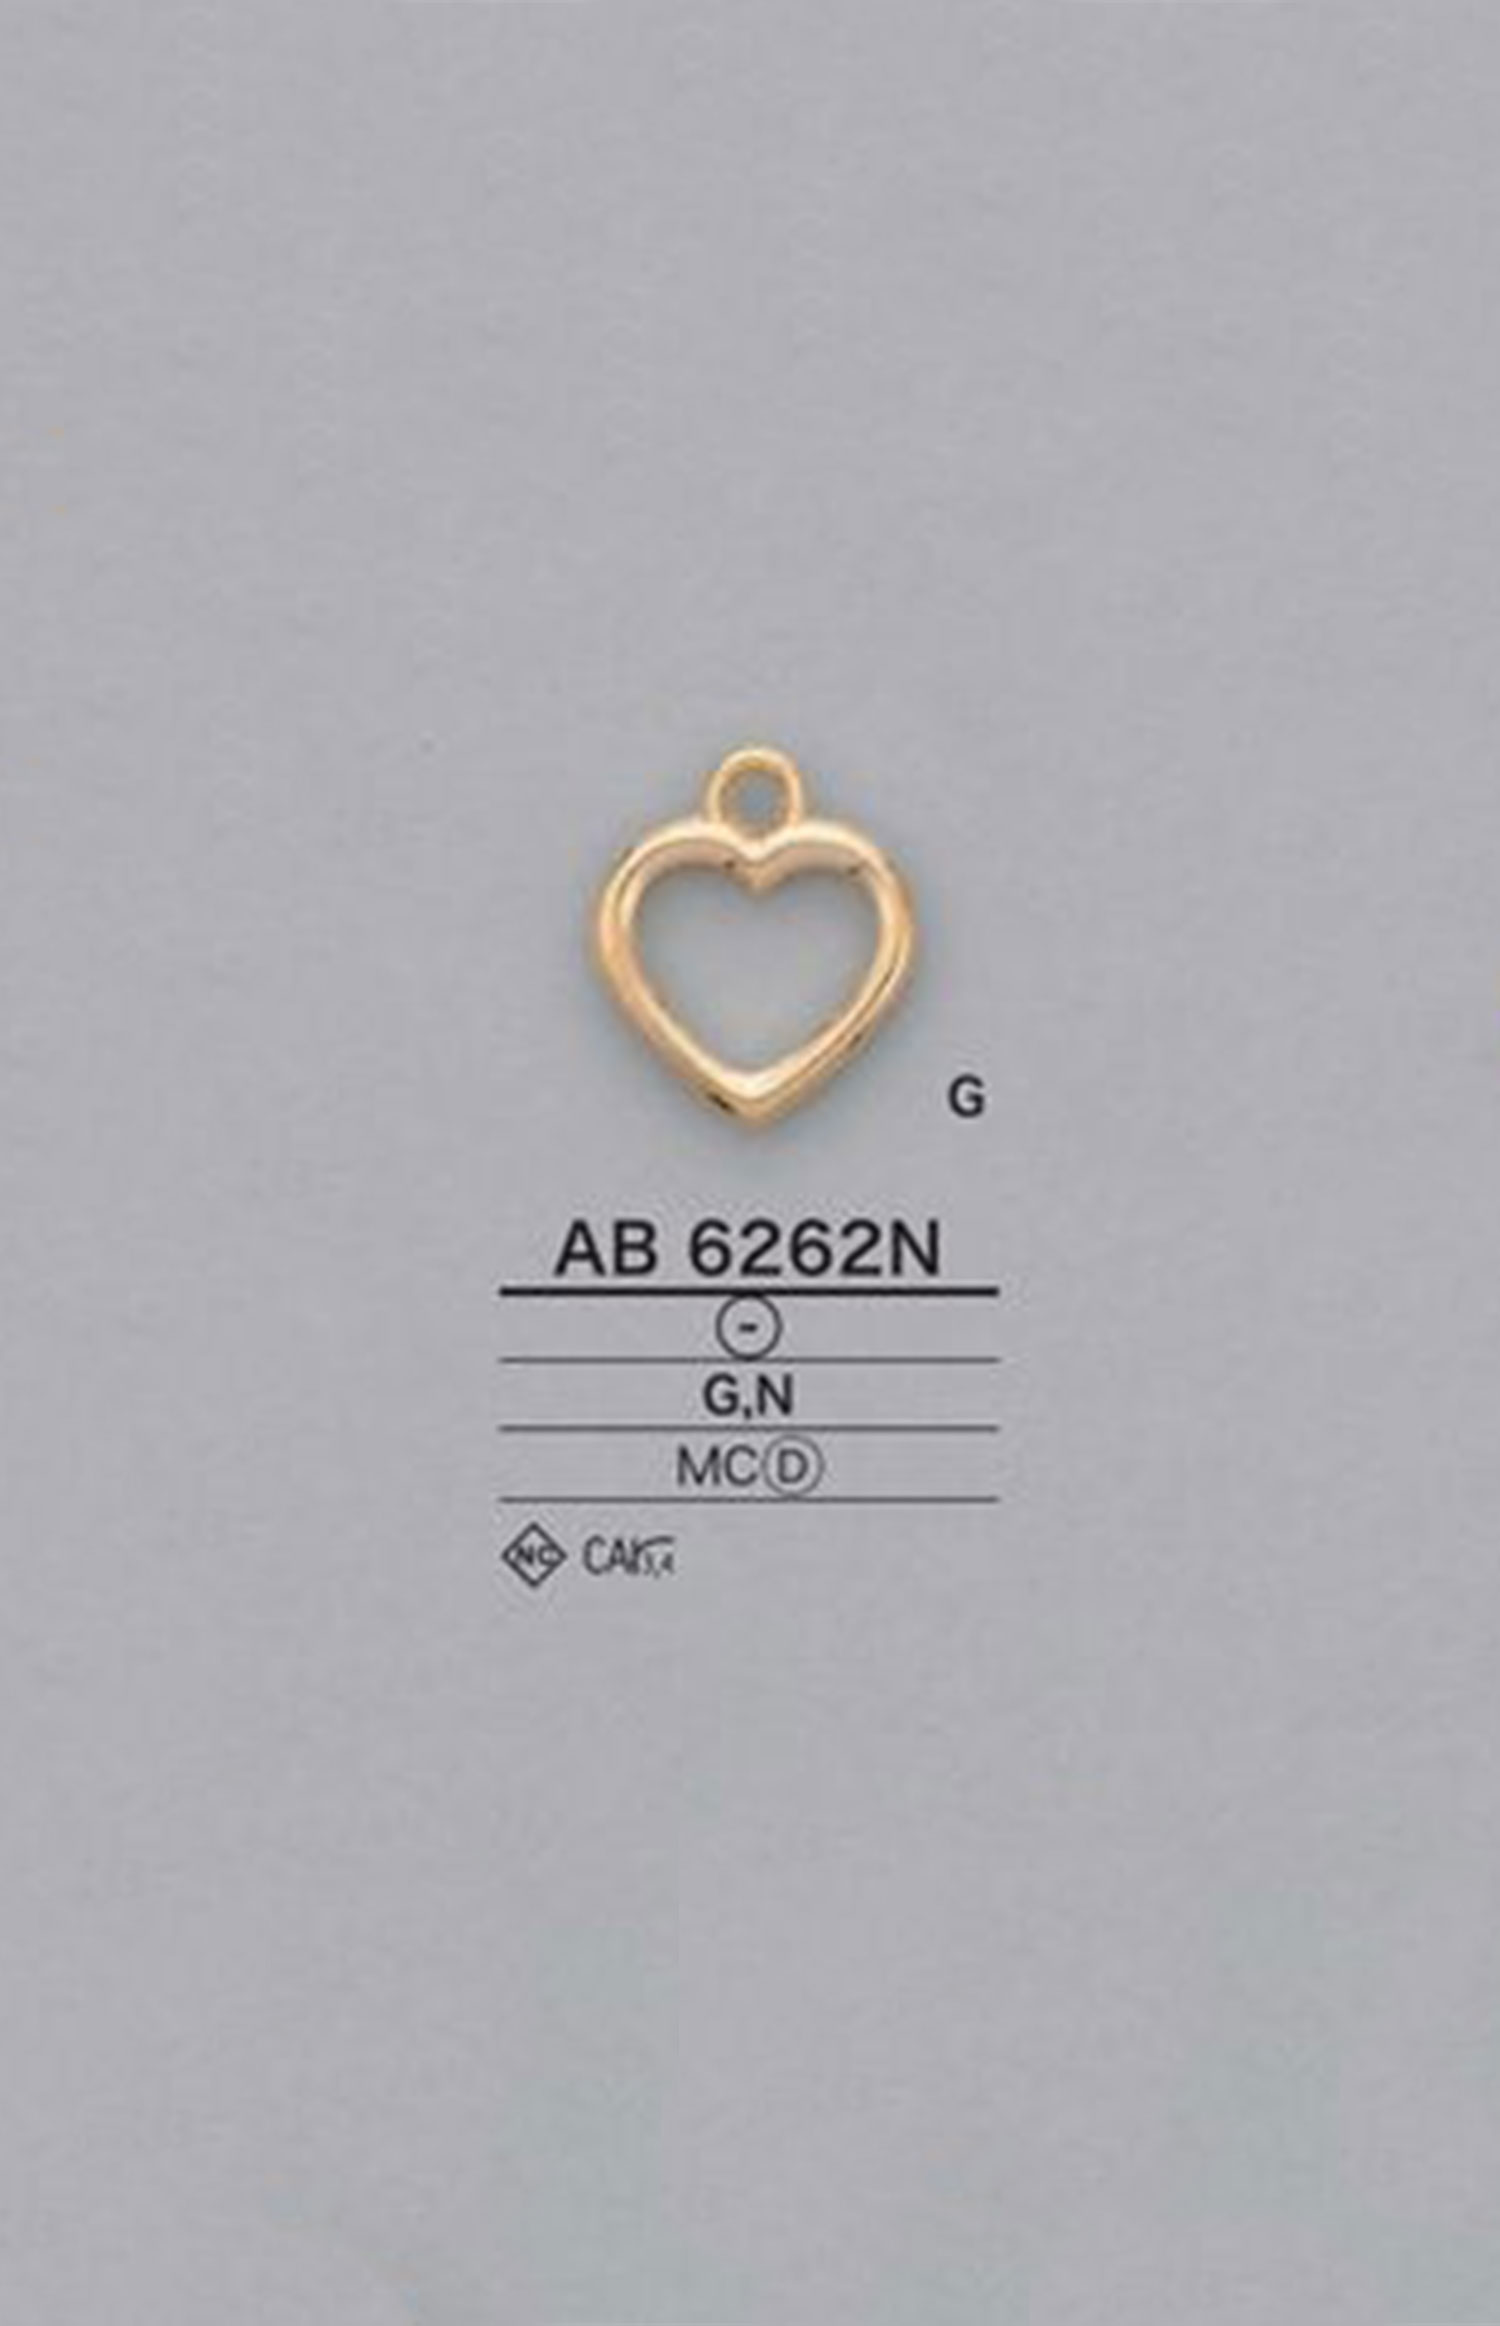 AB6262N Herzförmiger Reißverschlusspunkt (Pull Tab) IRIS